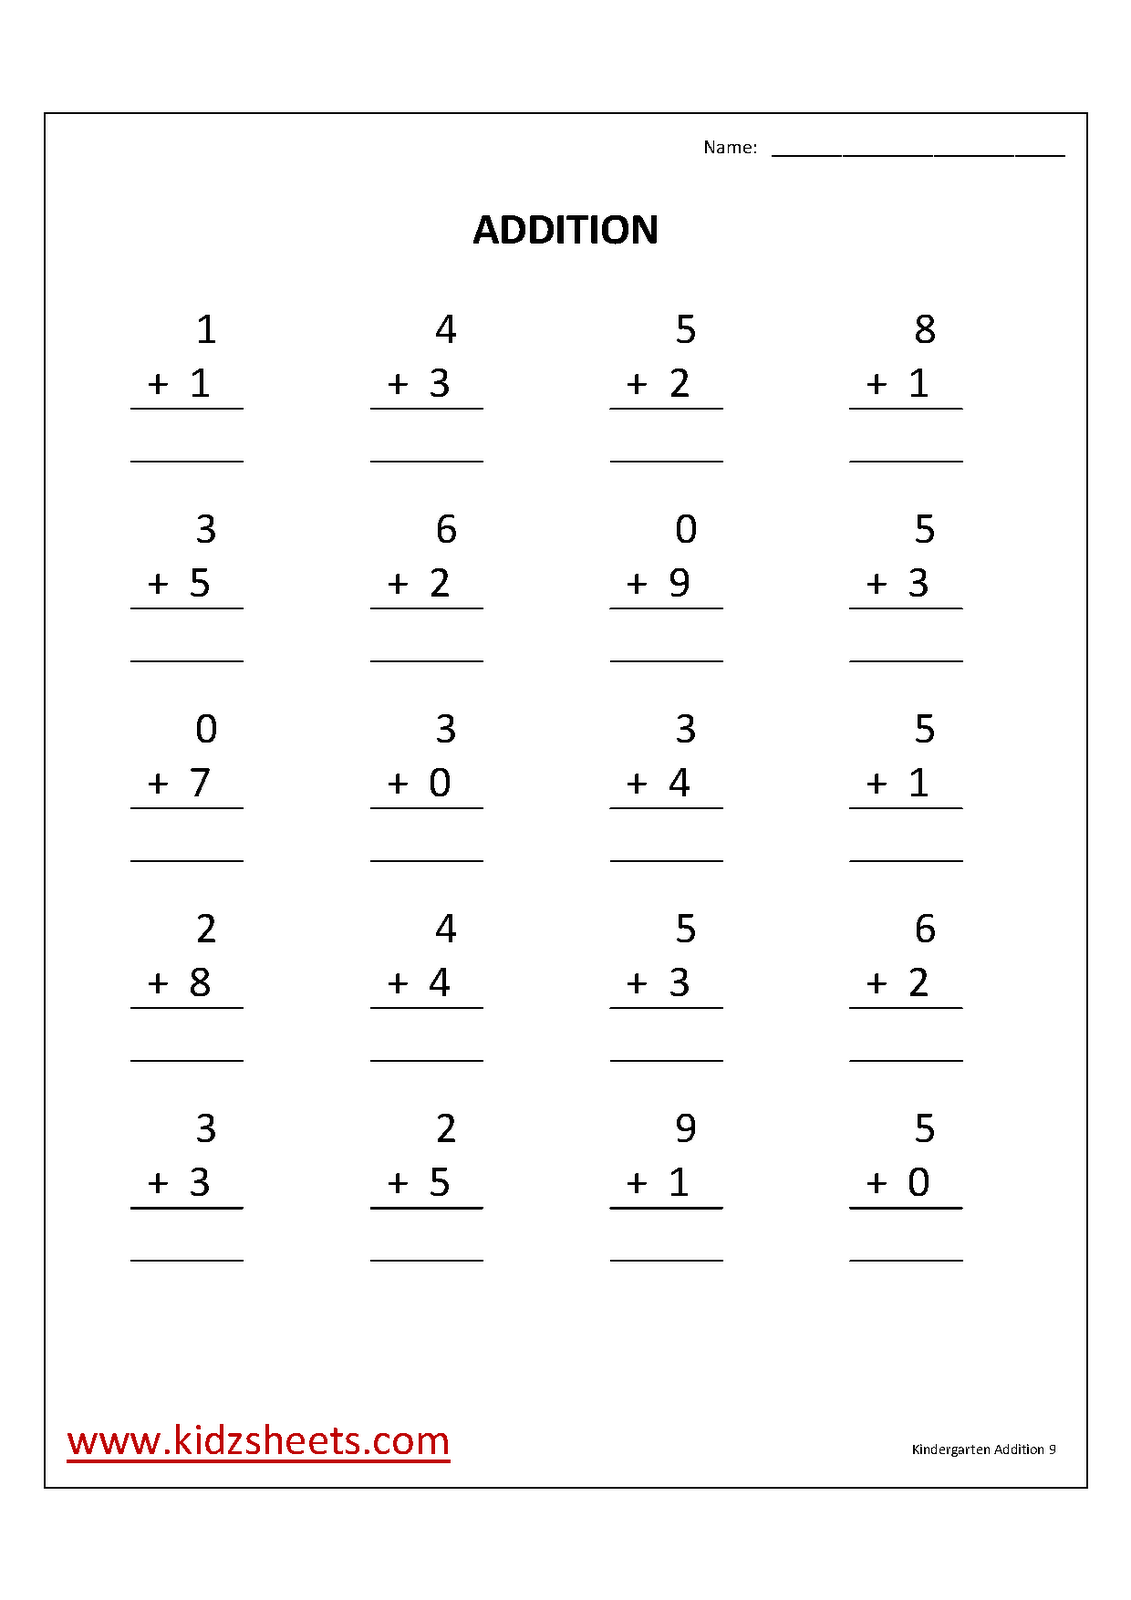 Free Printable Kindergarten Math Addition Worksheets Image